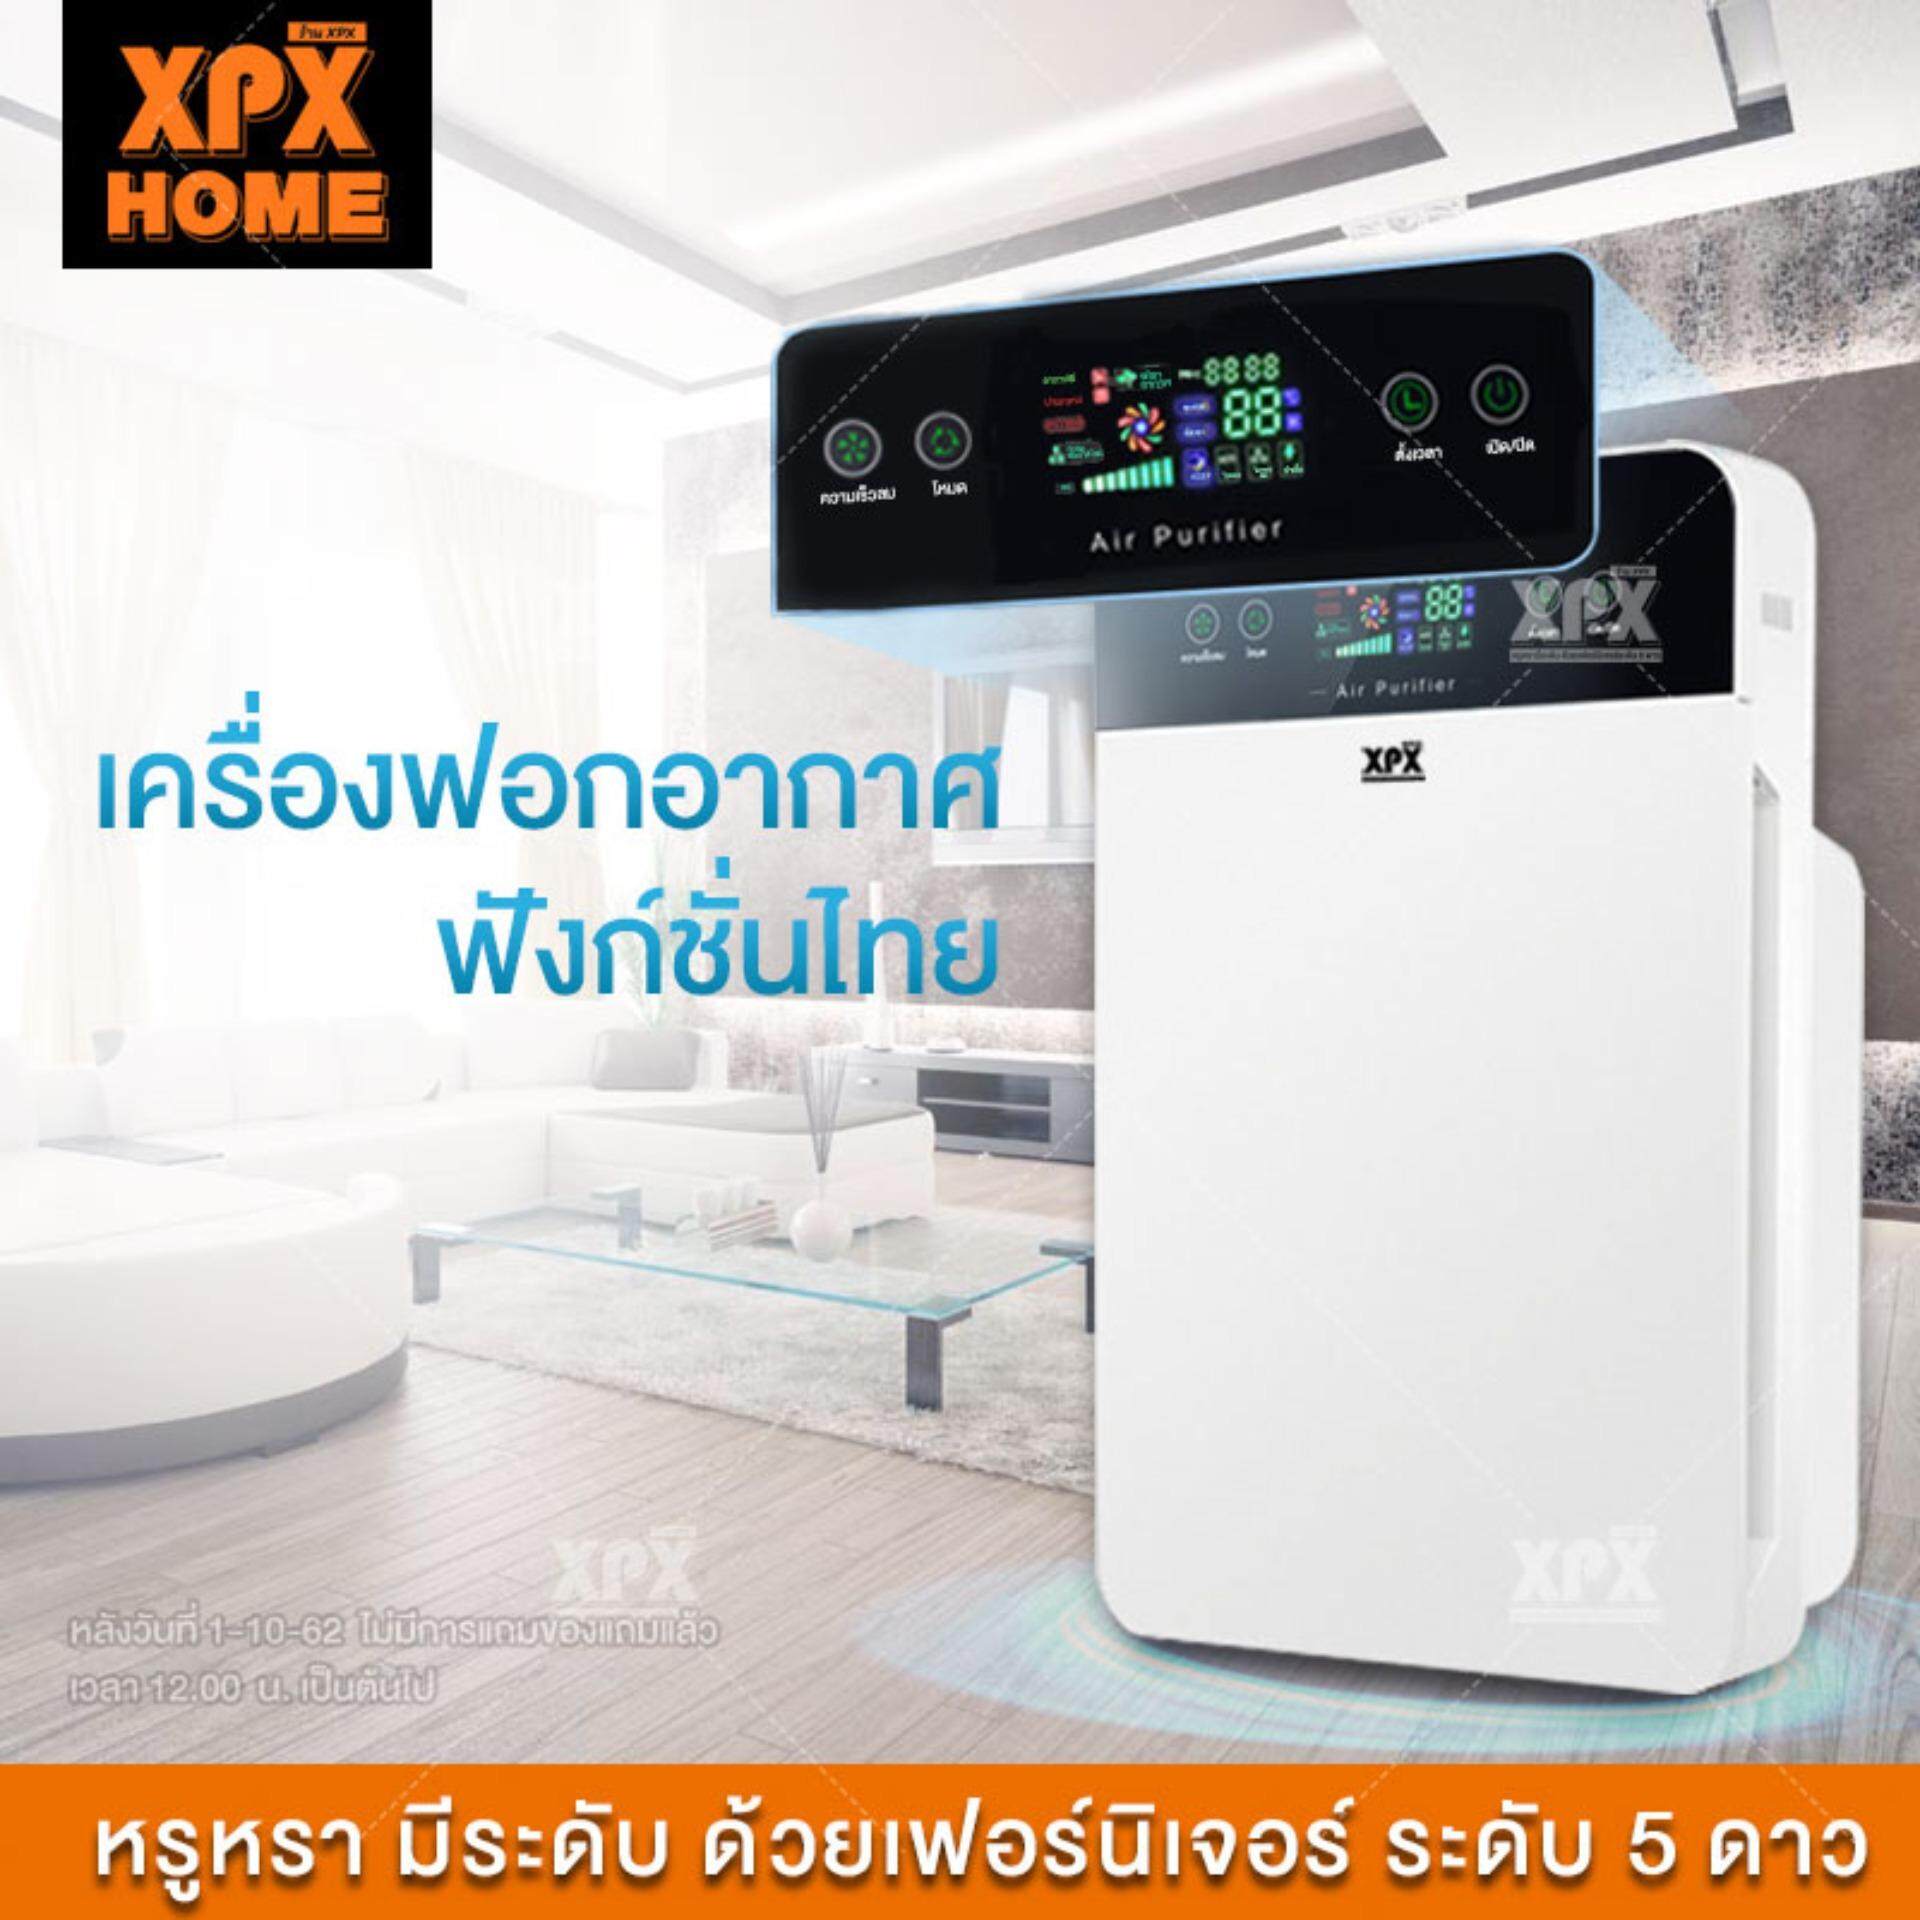 XPX เครื่องฟอกอากาศ เครื่องฟอกอากาศฟังก์ชั่นภาษาไทย สำหรับห้อง 32 ตร.ม. กรองได้ประสิทธิภาพมากที่สุด กรองฝุ่น ควัน และสารก่อภูมิแพ้ ไรฝุ่น JD55THAI